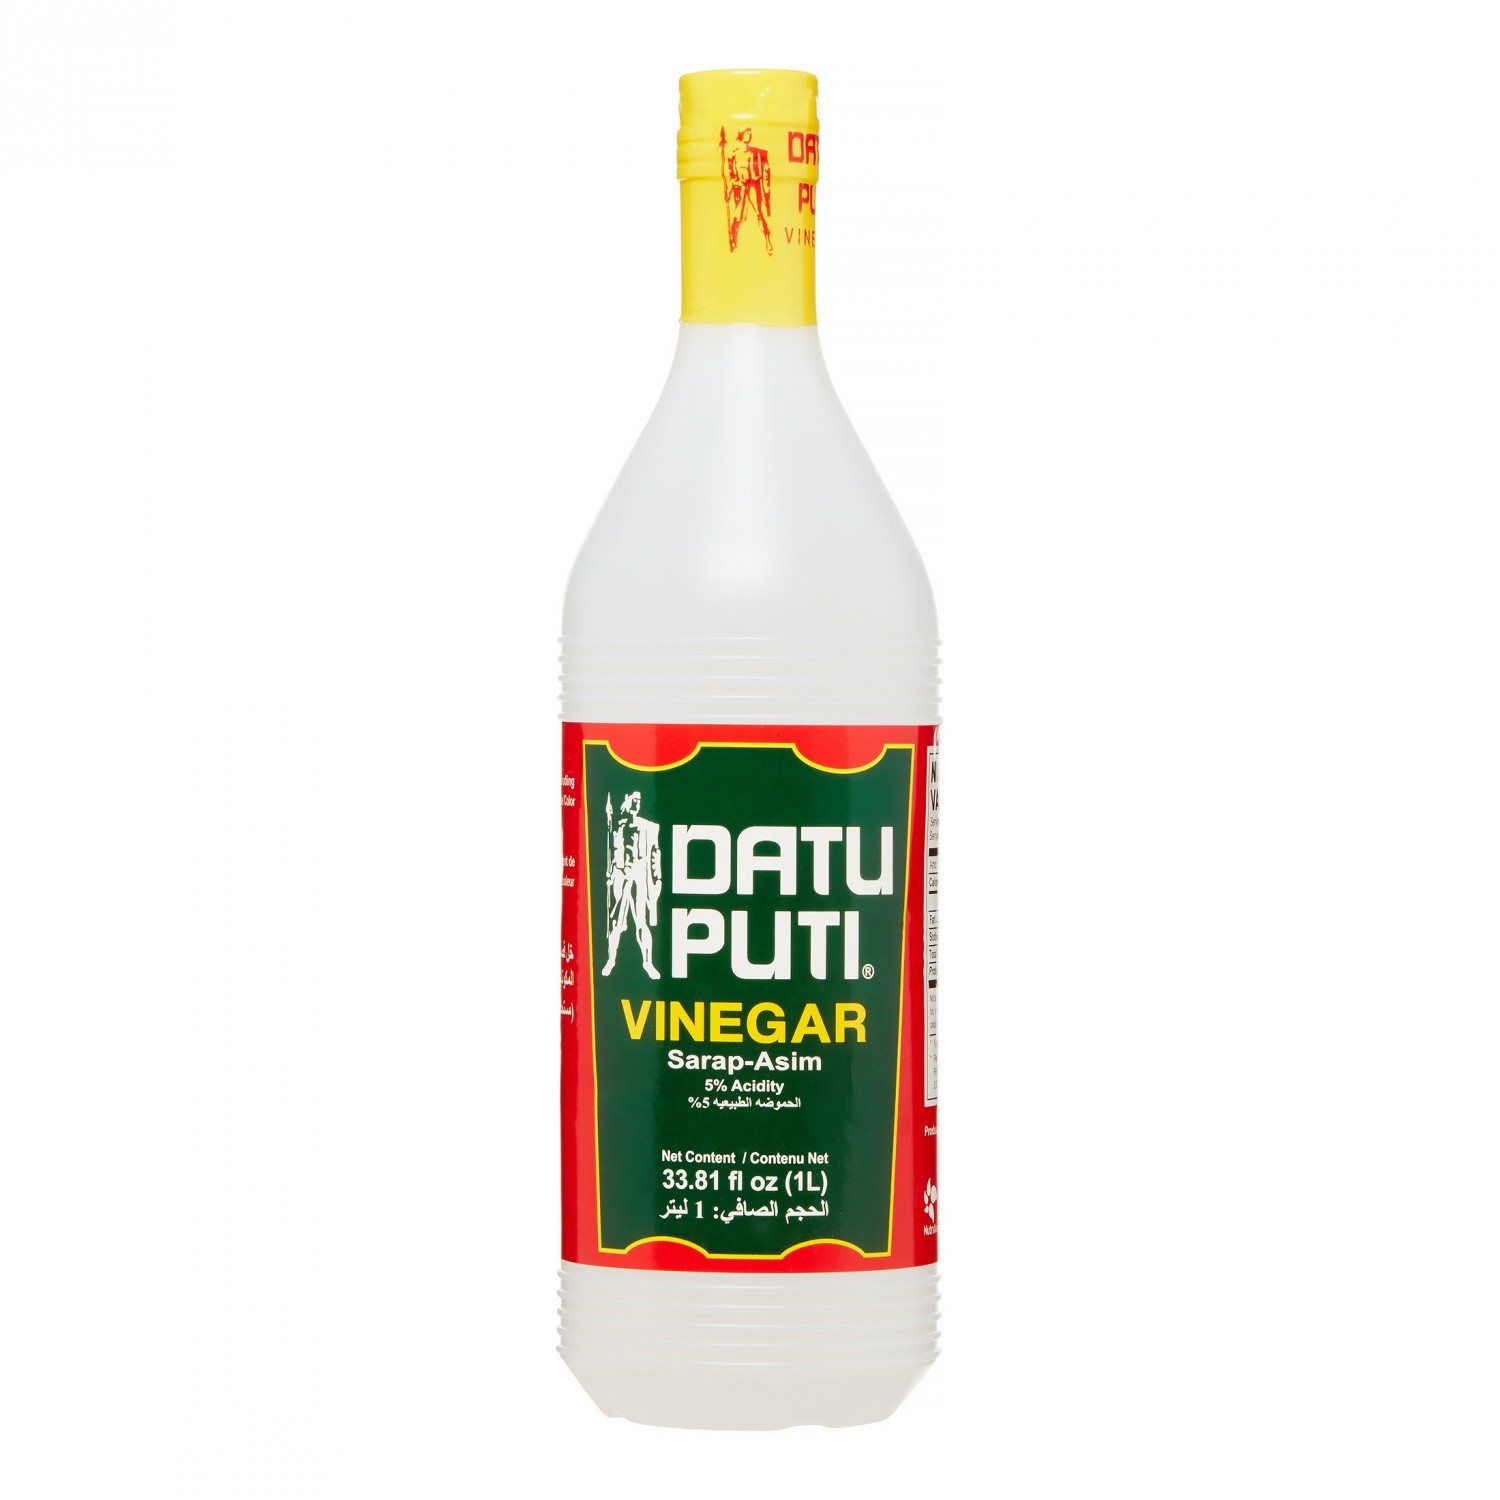 Datu Puti菲律宾风味白醋 1L